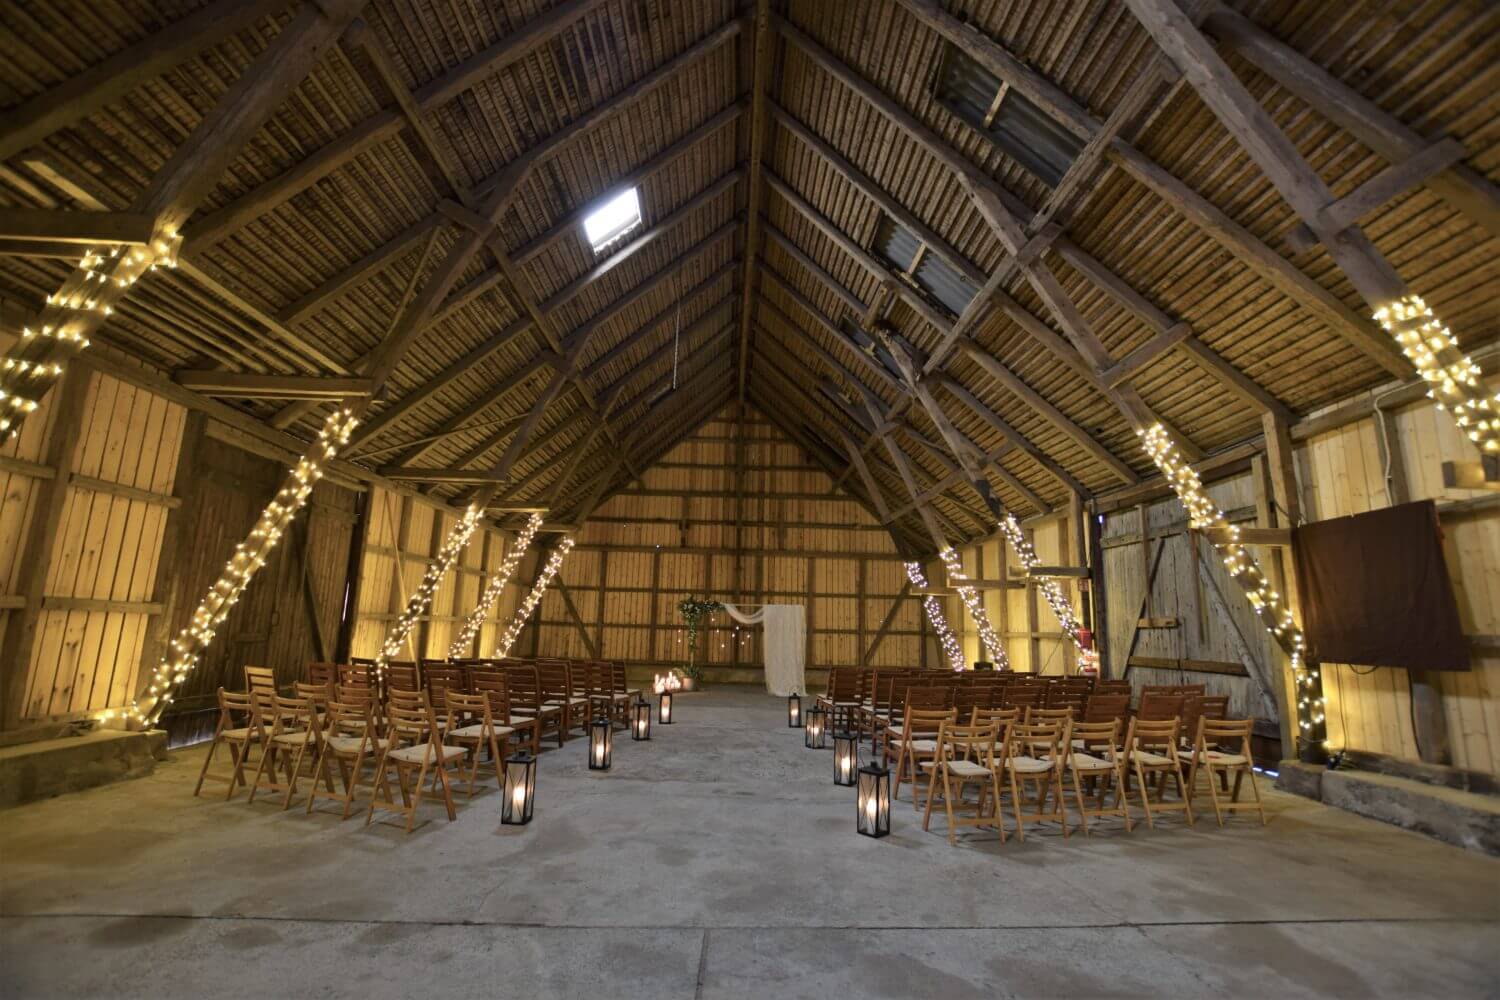 Bröllopsladan på Bläsinge Gård med stolar uppsatta för ceremoni